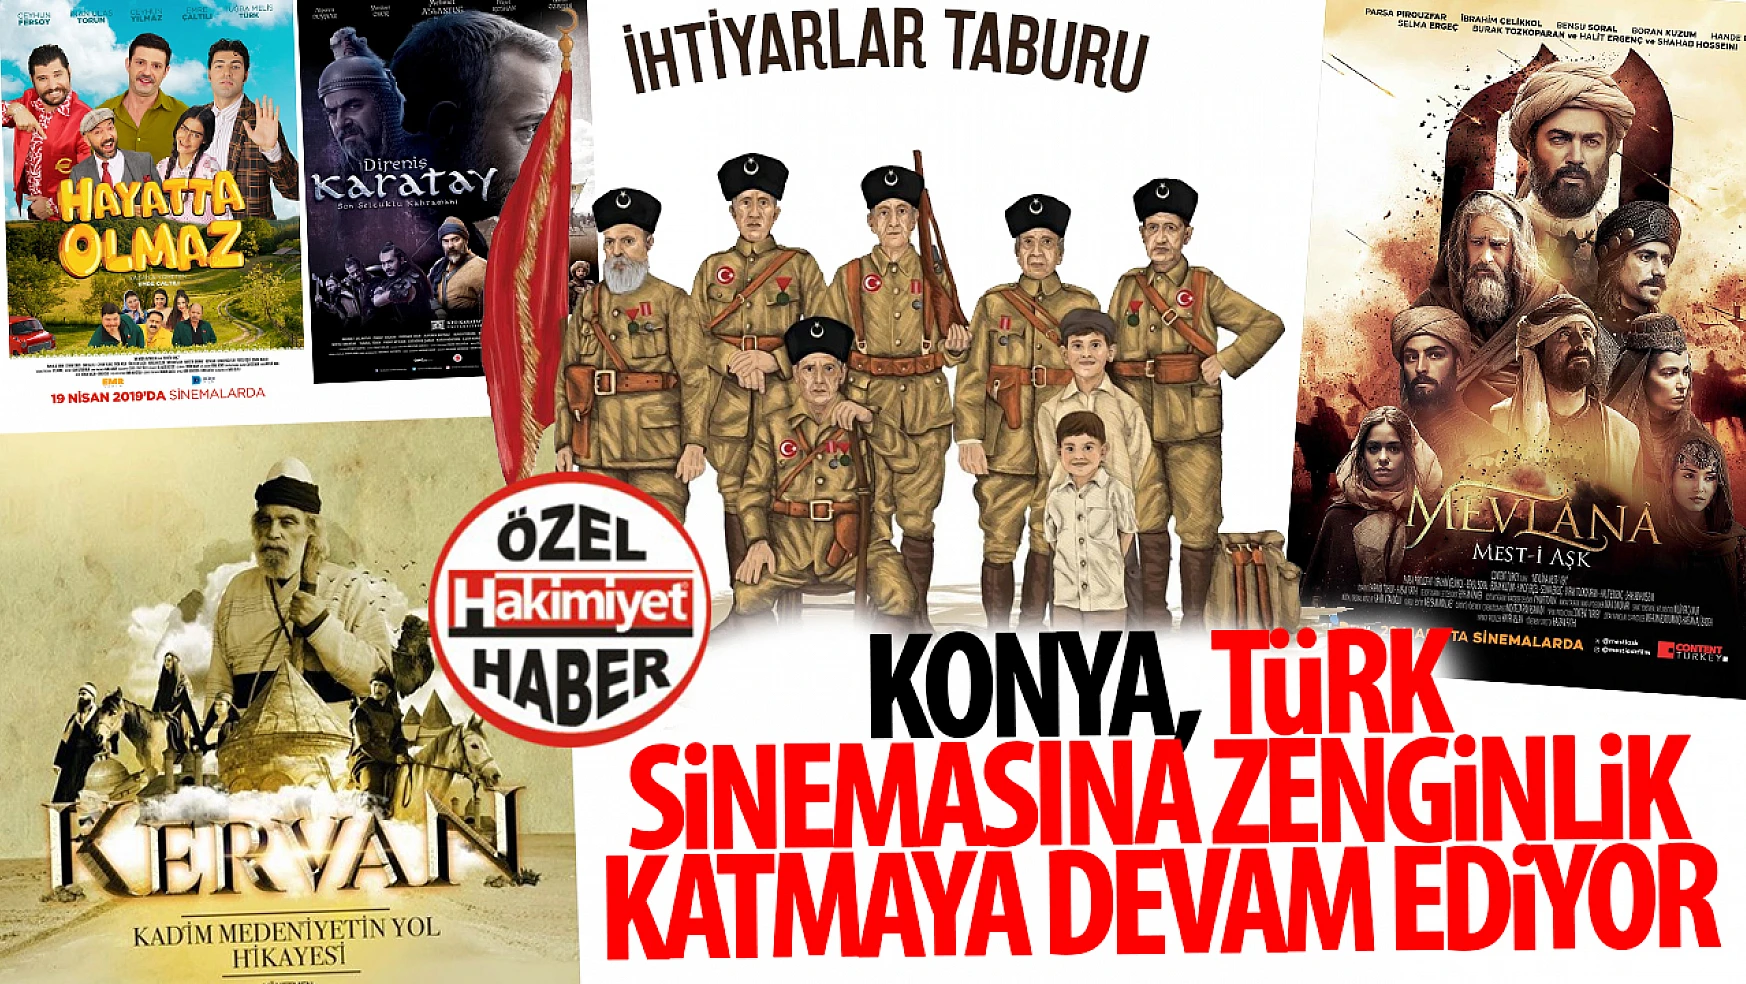 Konya, Türk Sinemasına Zenginlik Katmaya Devam Ediyor: İşte Çekilen Filmlerin Tam Listesi